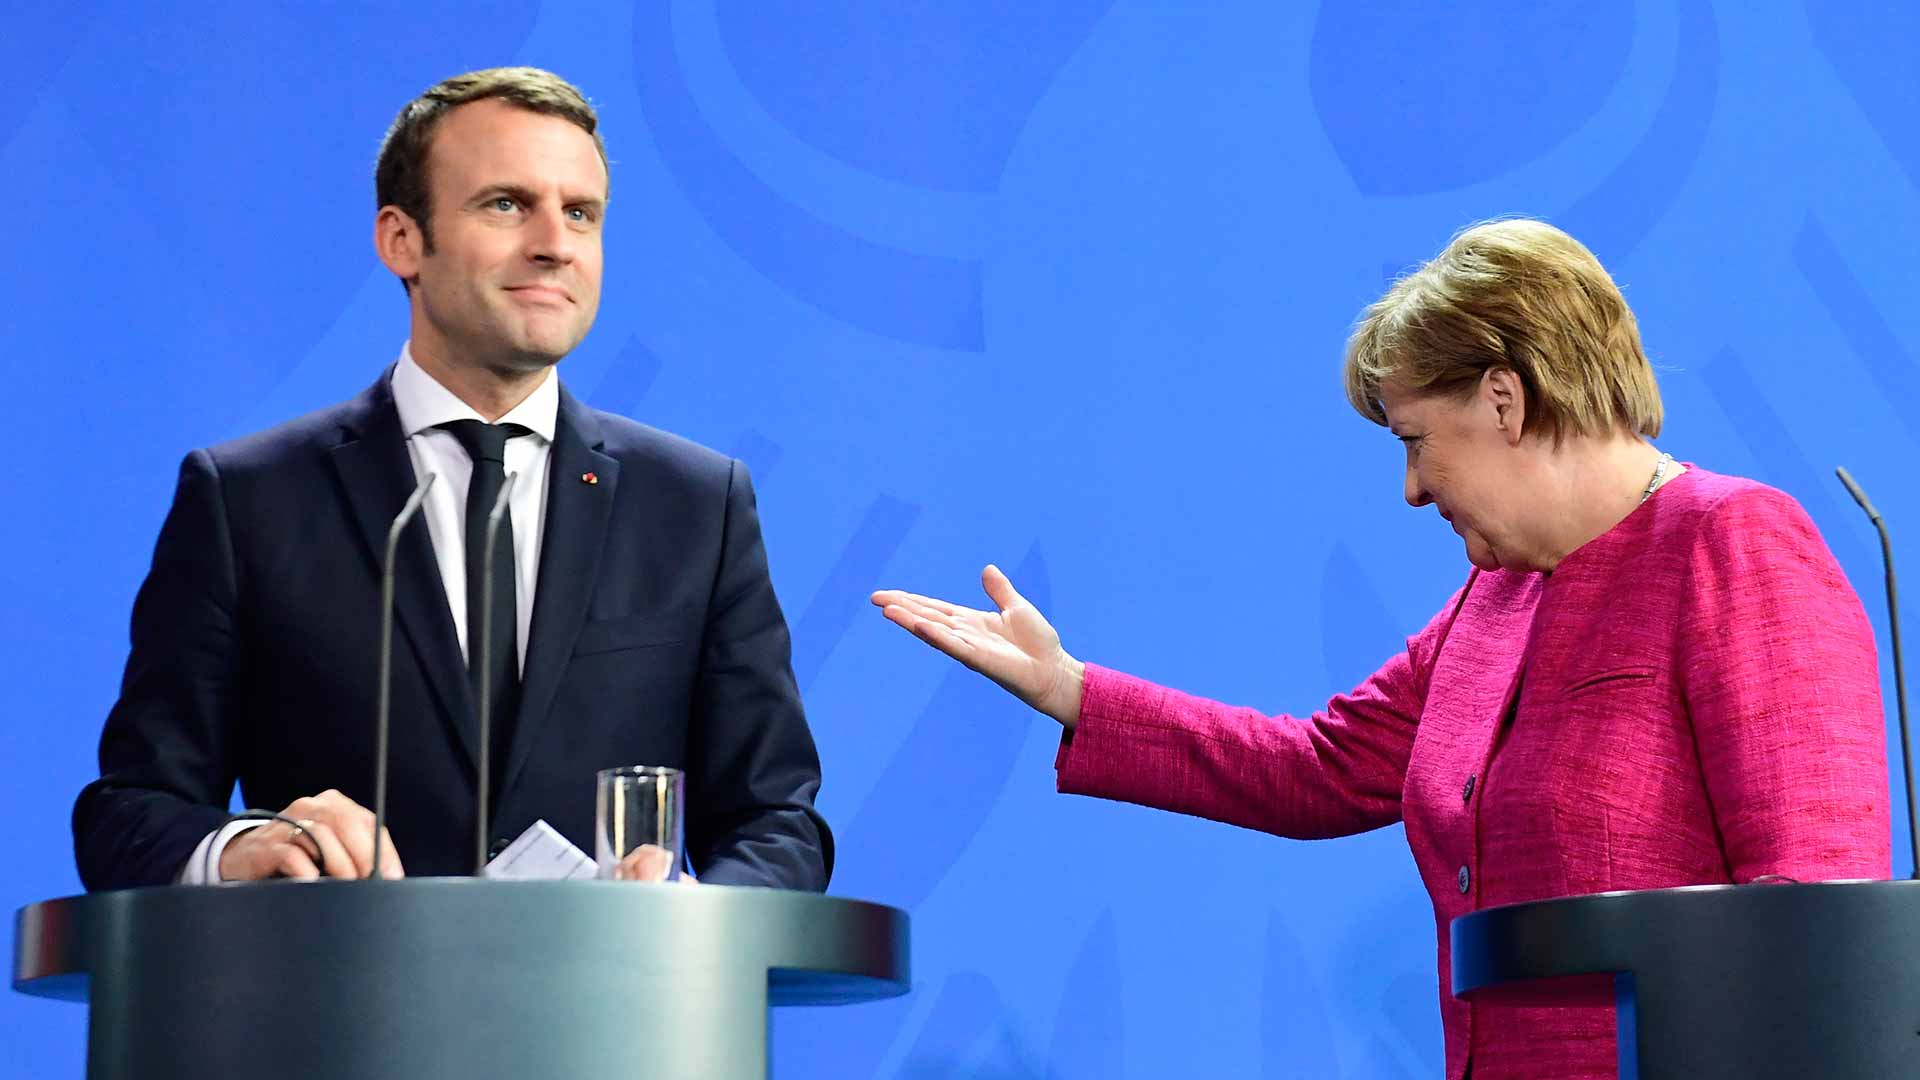 El Presidente Francés, Emmanuel Macron, y la Canciller, Angela Merkel, se reunieron en Marsella para preparar una agenda europea común, en la que el tema de la inmigración tendrá un papel central durante un semestre.